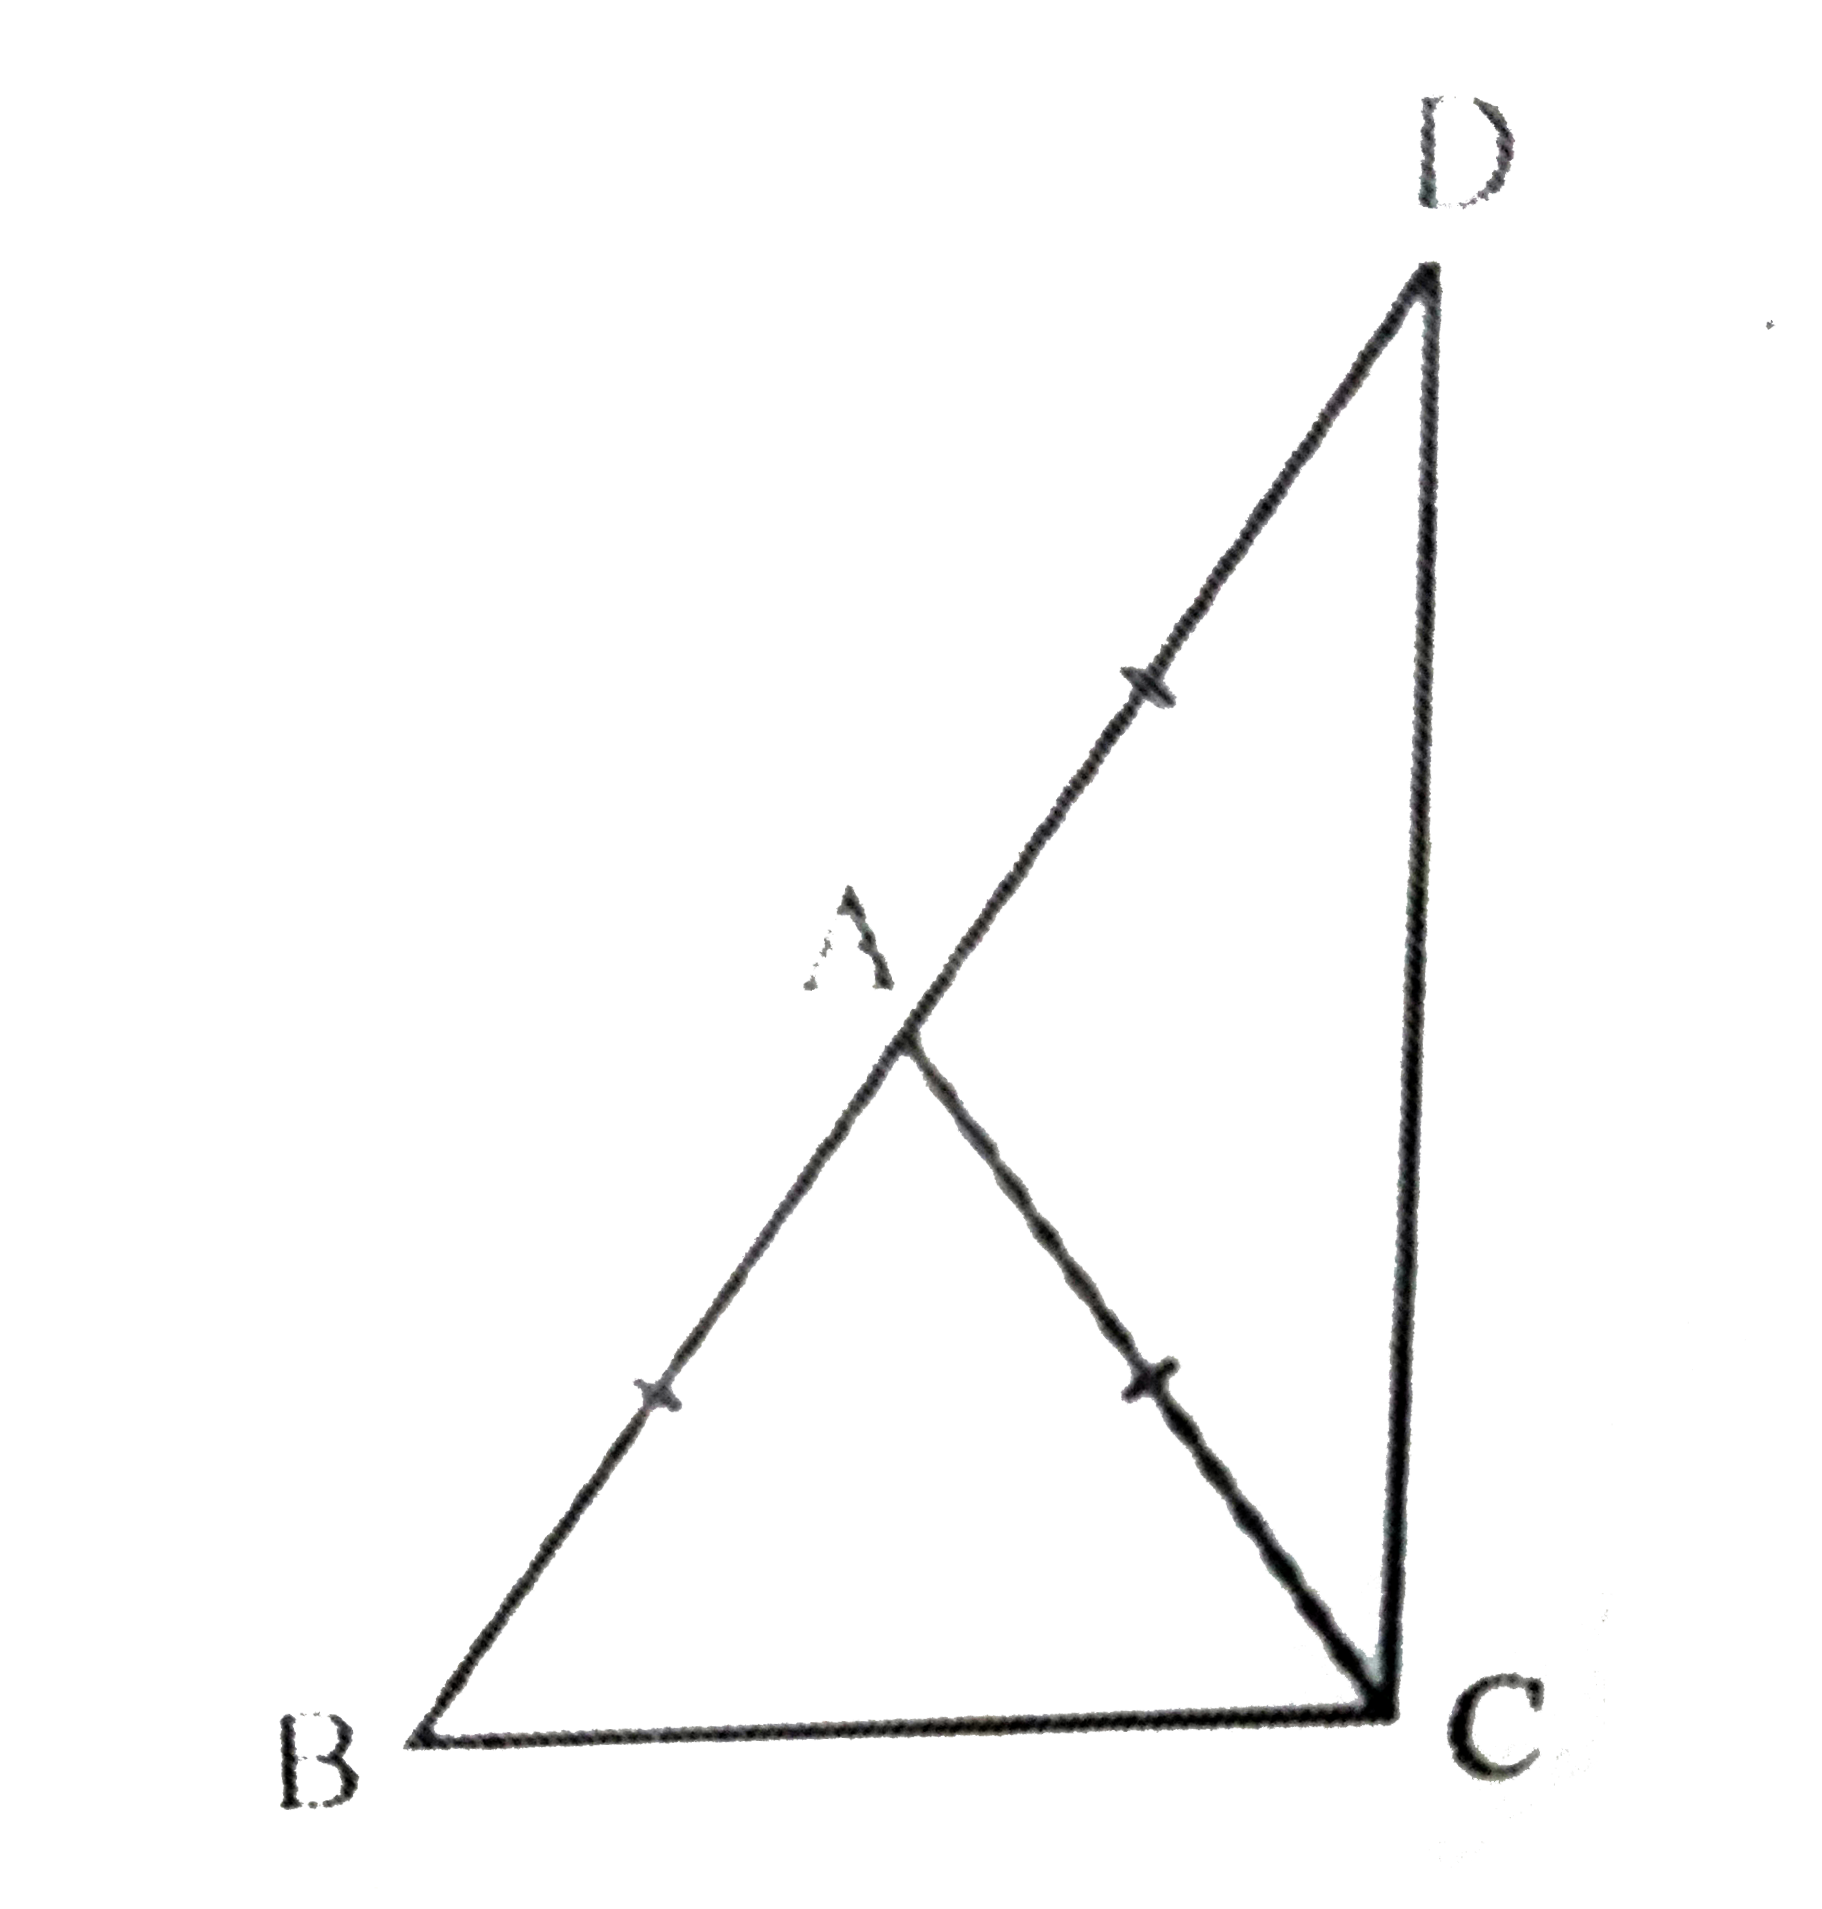 ABC एक समद्विबाहु त्रिभुज है, जिसमें AB = AC है। भुजा BA बिंदु D तक इस प्रकार बढ़ाई गई है कि AD = AB है। दर्शाइए कि  angle BCD  एक समकोण है।